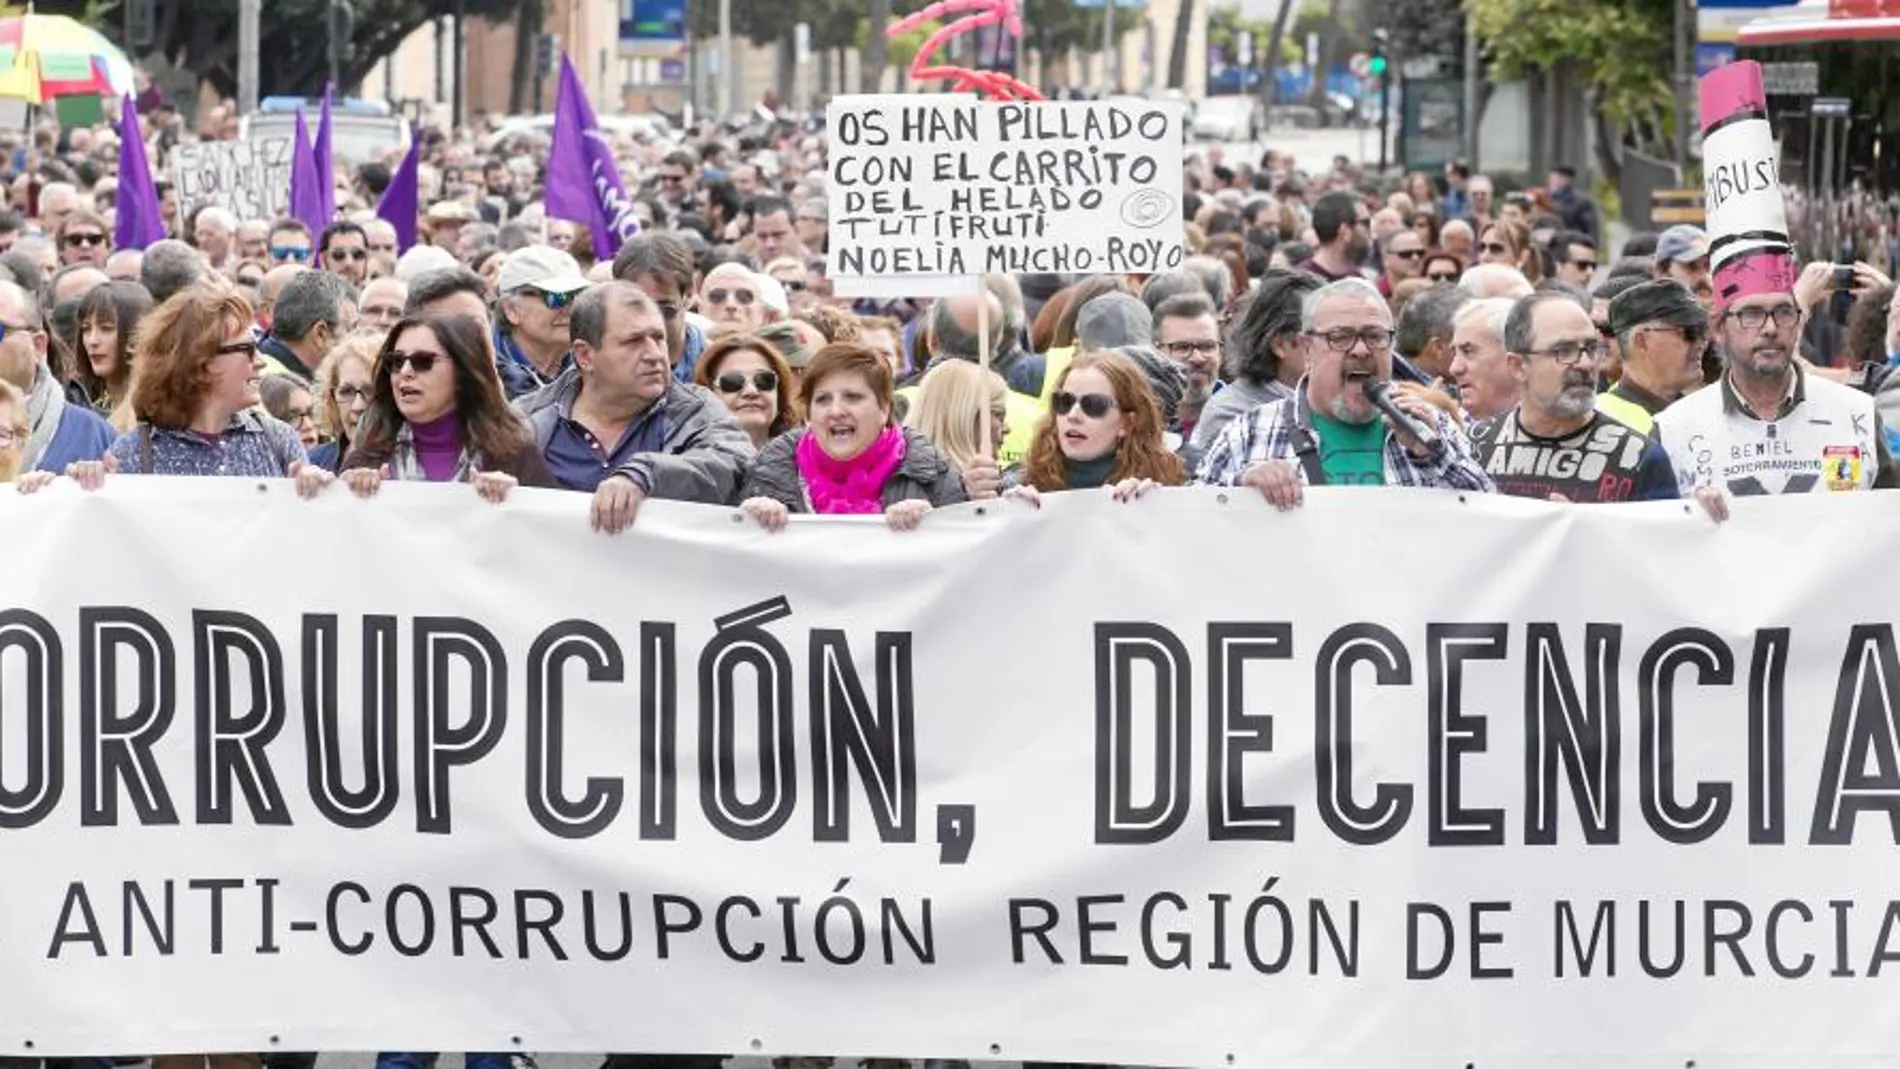 Unas 4.000 personas, según un portavoz de la organización convocante, se manifestaron ayer por las calles de Murcia contra la corrupción y para exigir al presidente autonómico que dimita por el «caso Auditorio».